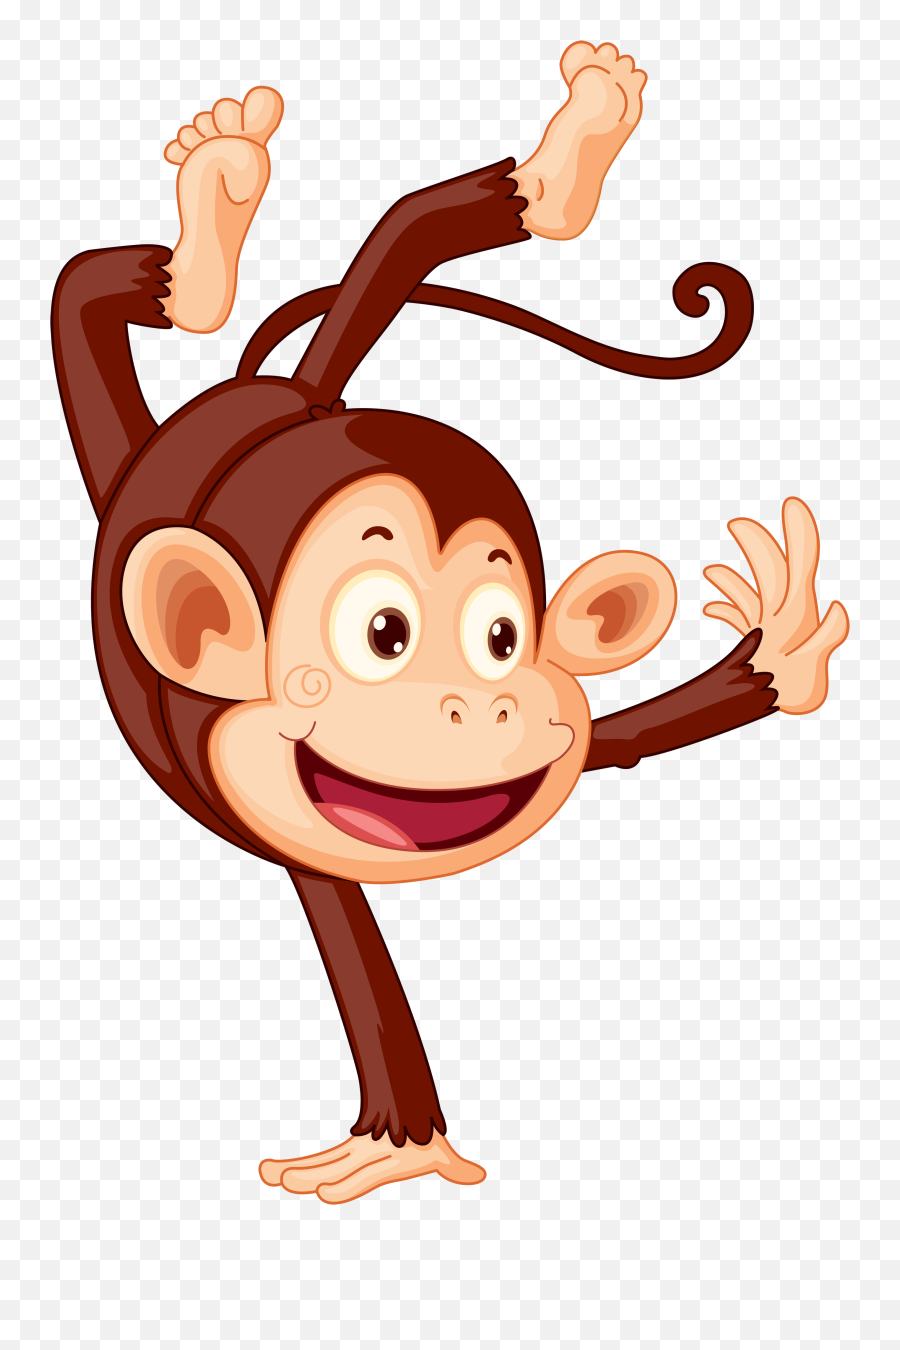 Clipart Images Monkey Business Monkeys - Animals Emoji,Celebrating Clipart